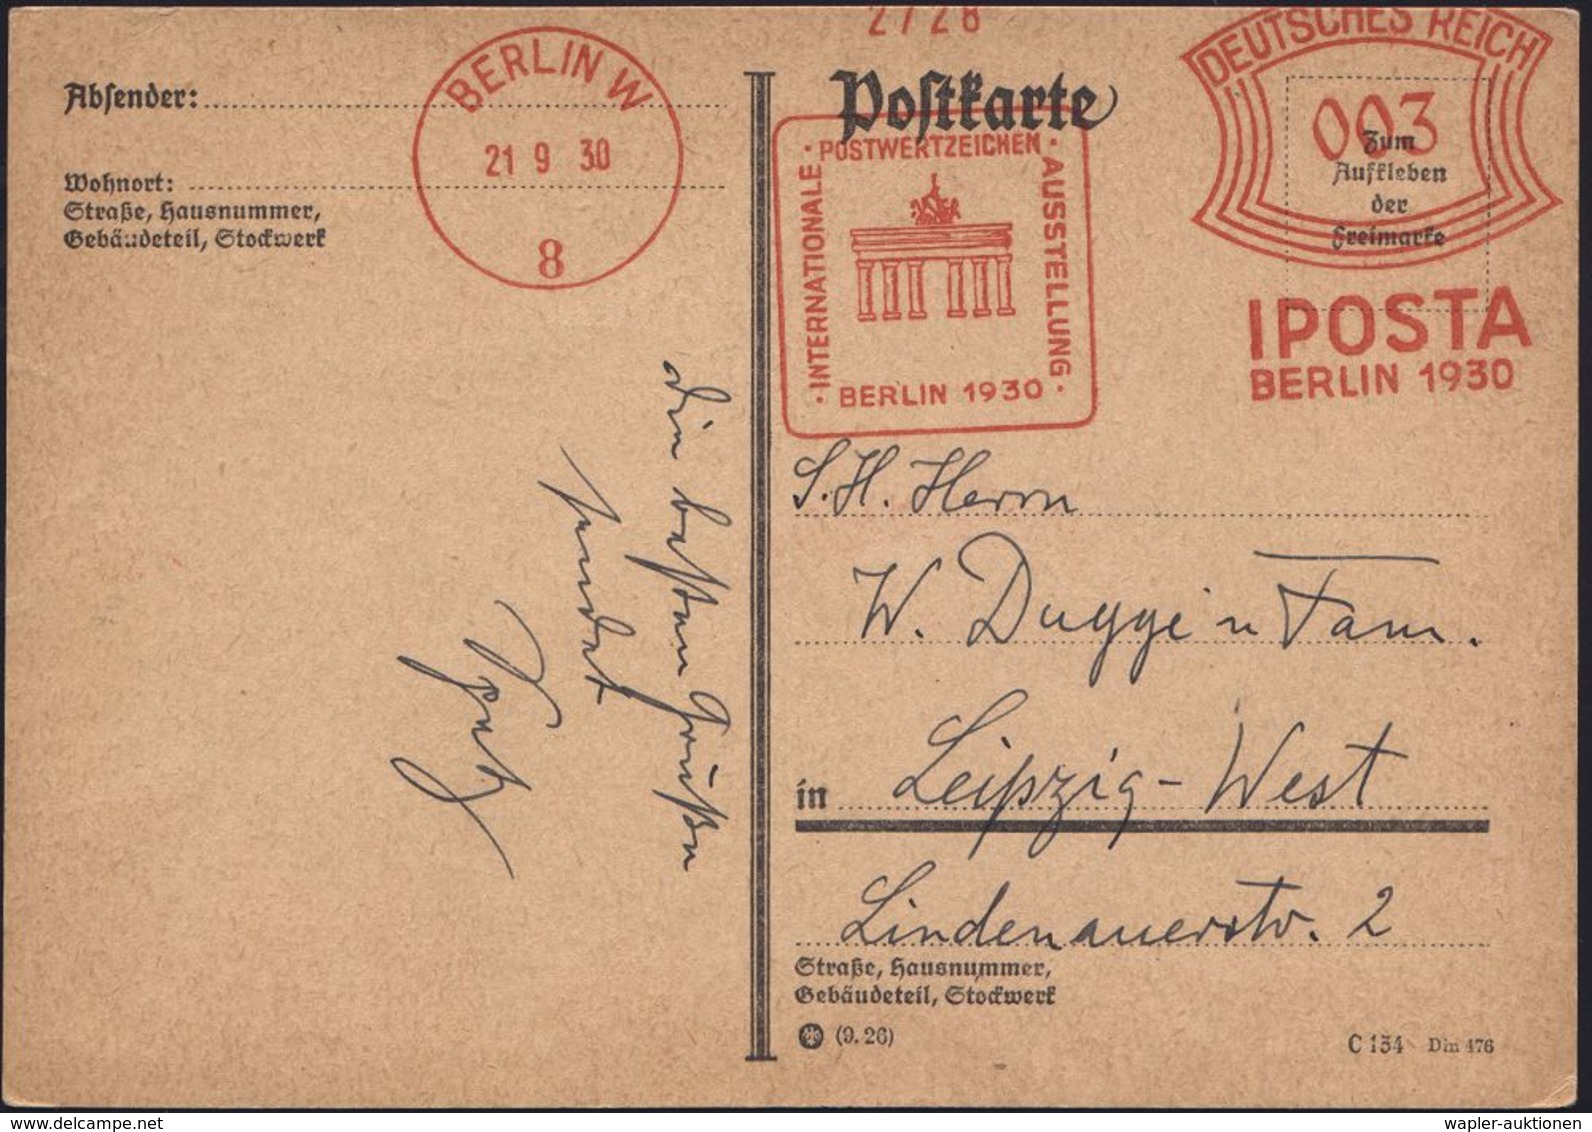 BRANDENBURGER TOR - EIN DEUTSCHES SYMBOL : BERLIN W/ 8/ INTERNAT:/ POSTWERTZEICHEN/ AUSSTELLUNG/ IPOSTA.. 1930 (21.9.) S - Monuments